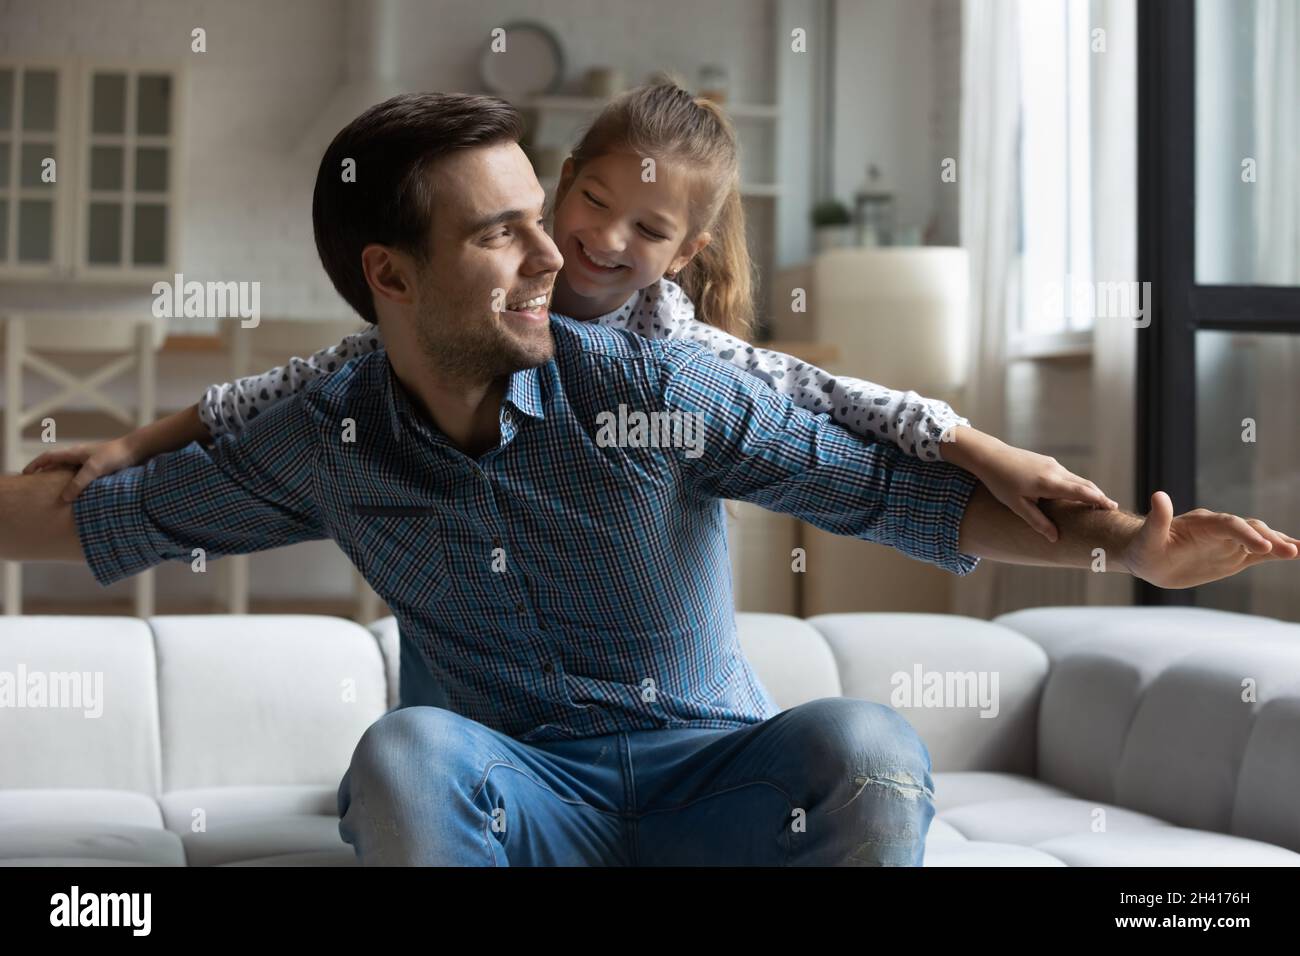 Fröhlicher junger Vater, der mit einer kleinen Tochter spielt. Stockfoto